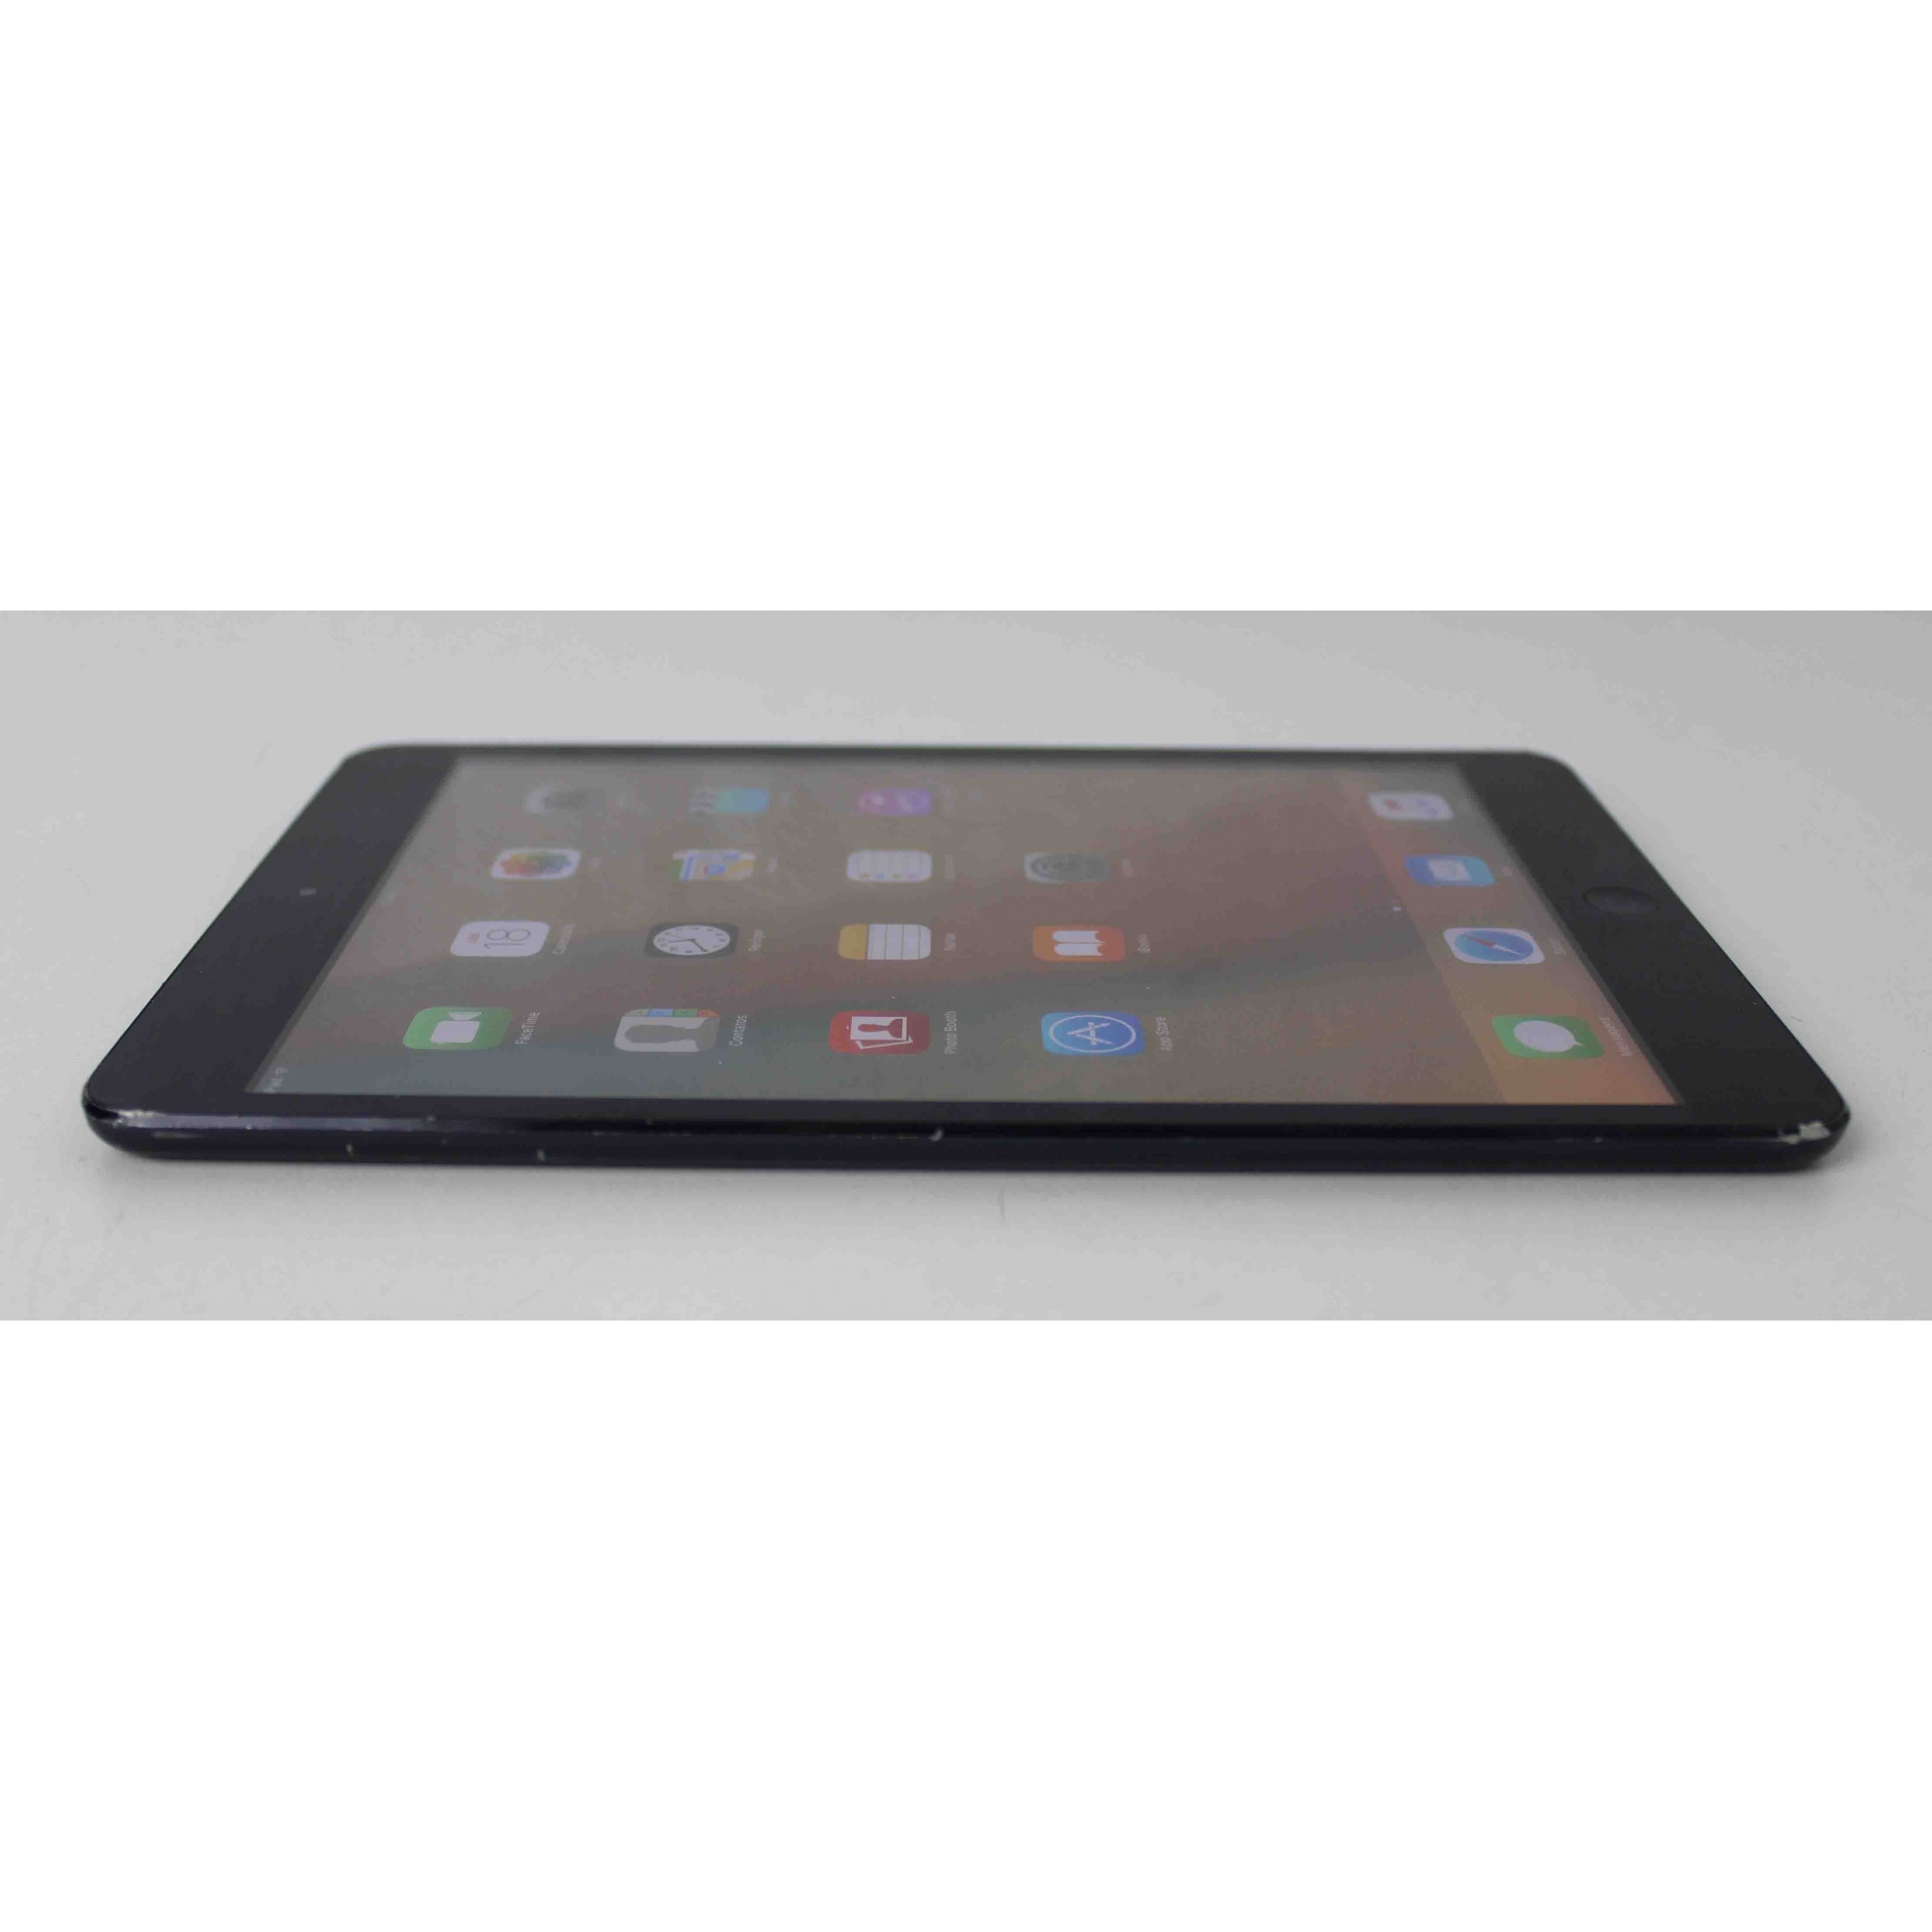 iPad Mini 1 MD528BZ/A 7.9" 16GB Wifi - Preto